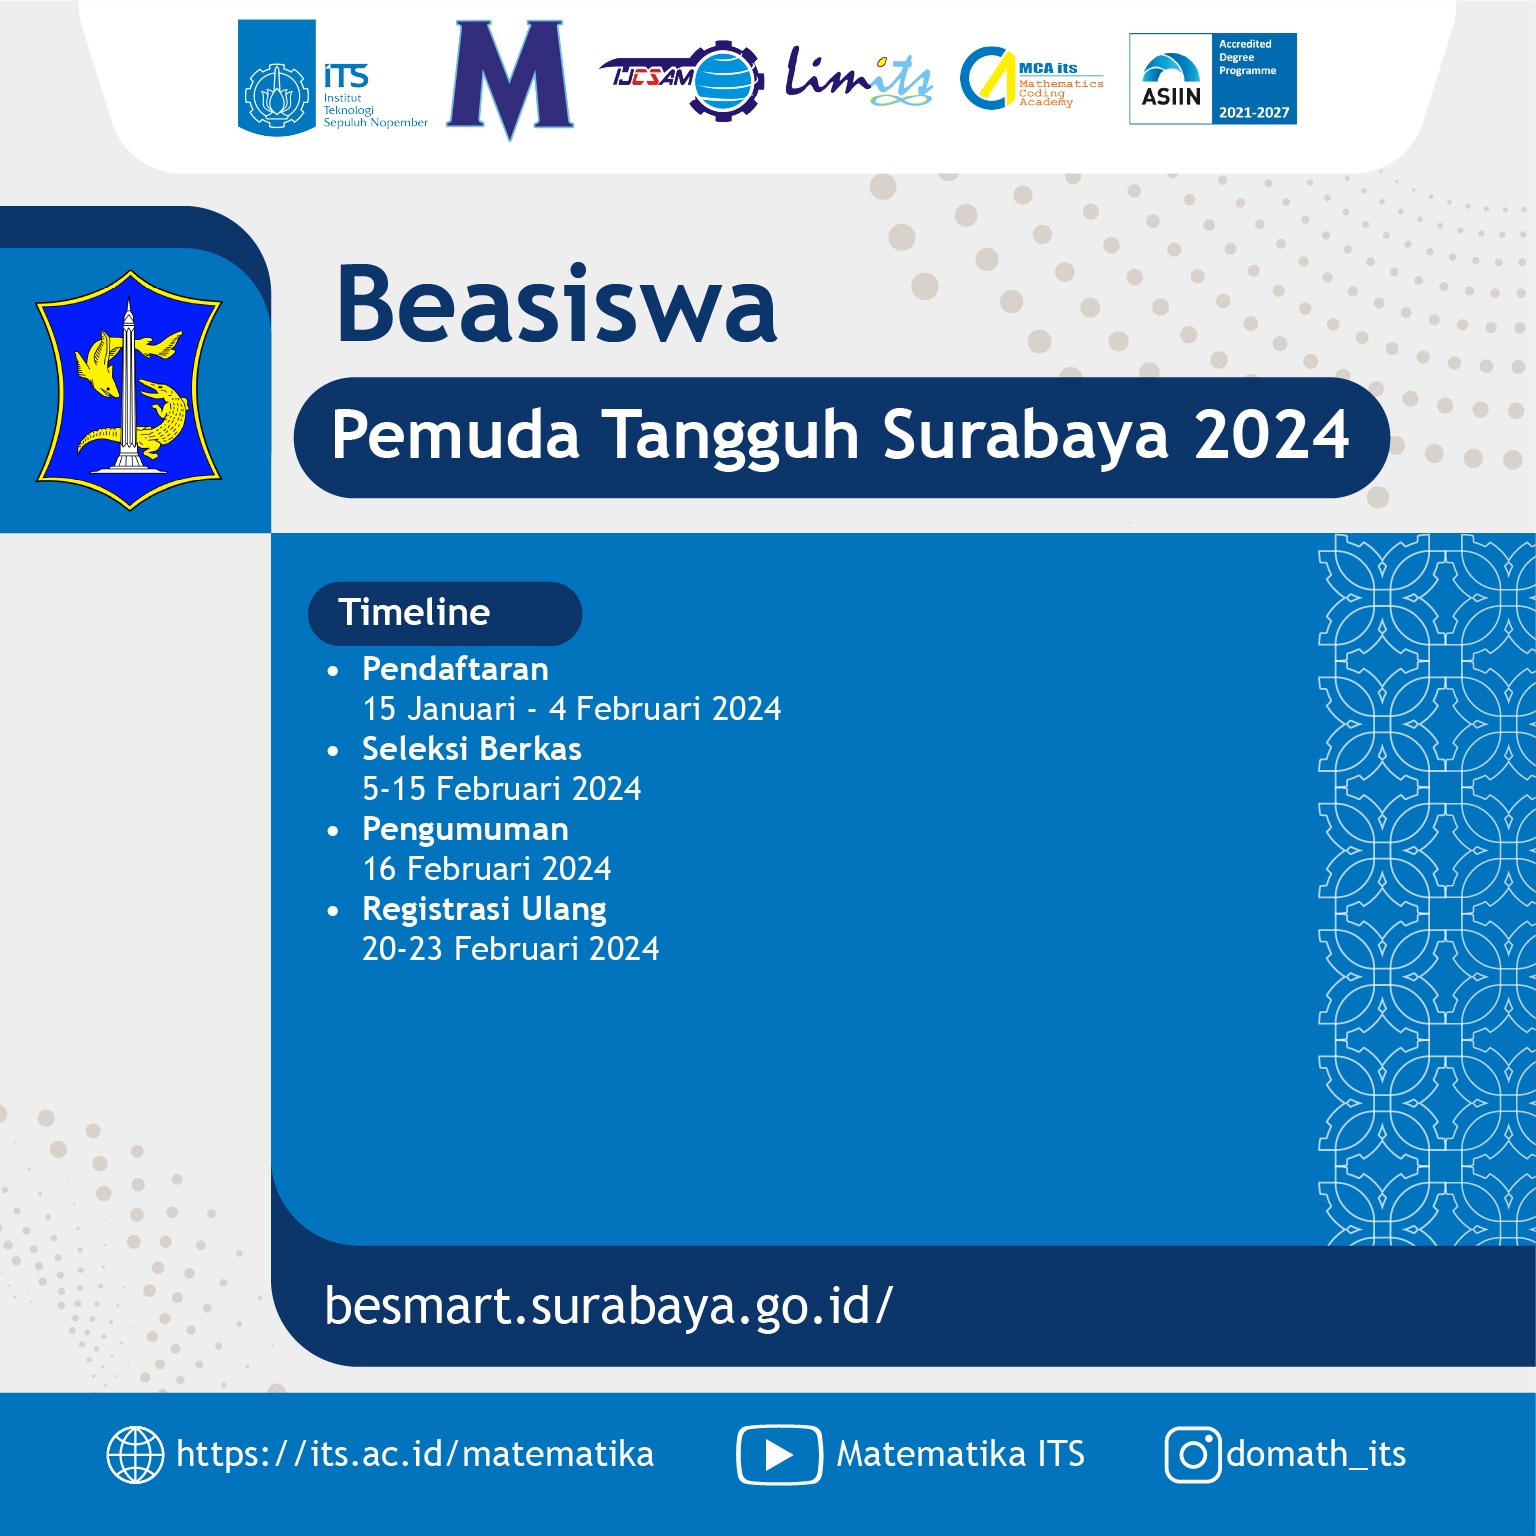 Beasiswa Pemuda Tangguh Surabaya 2024